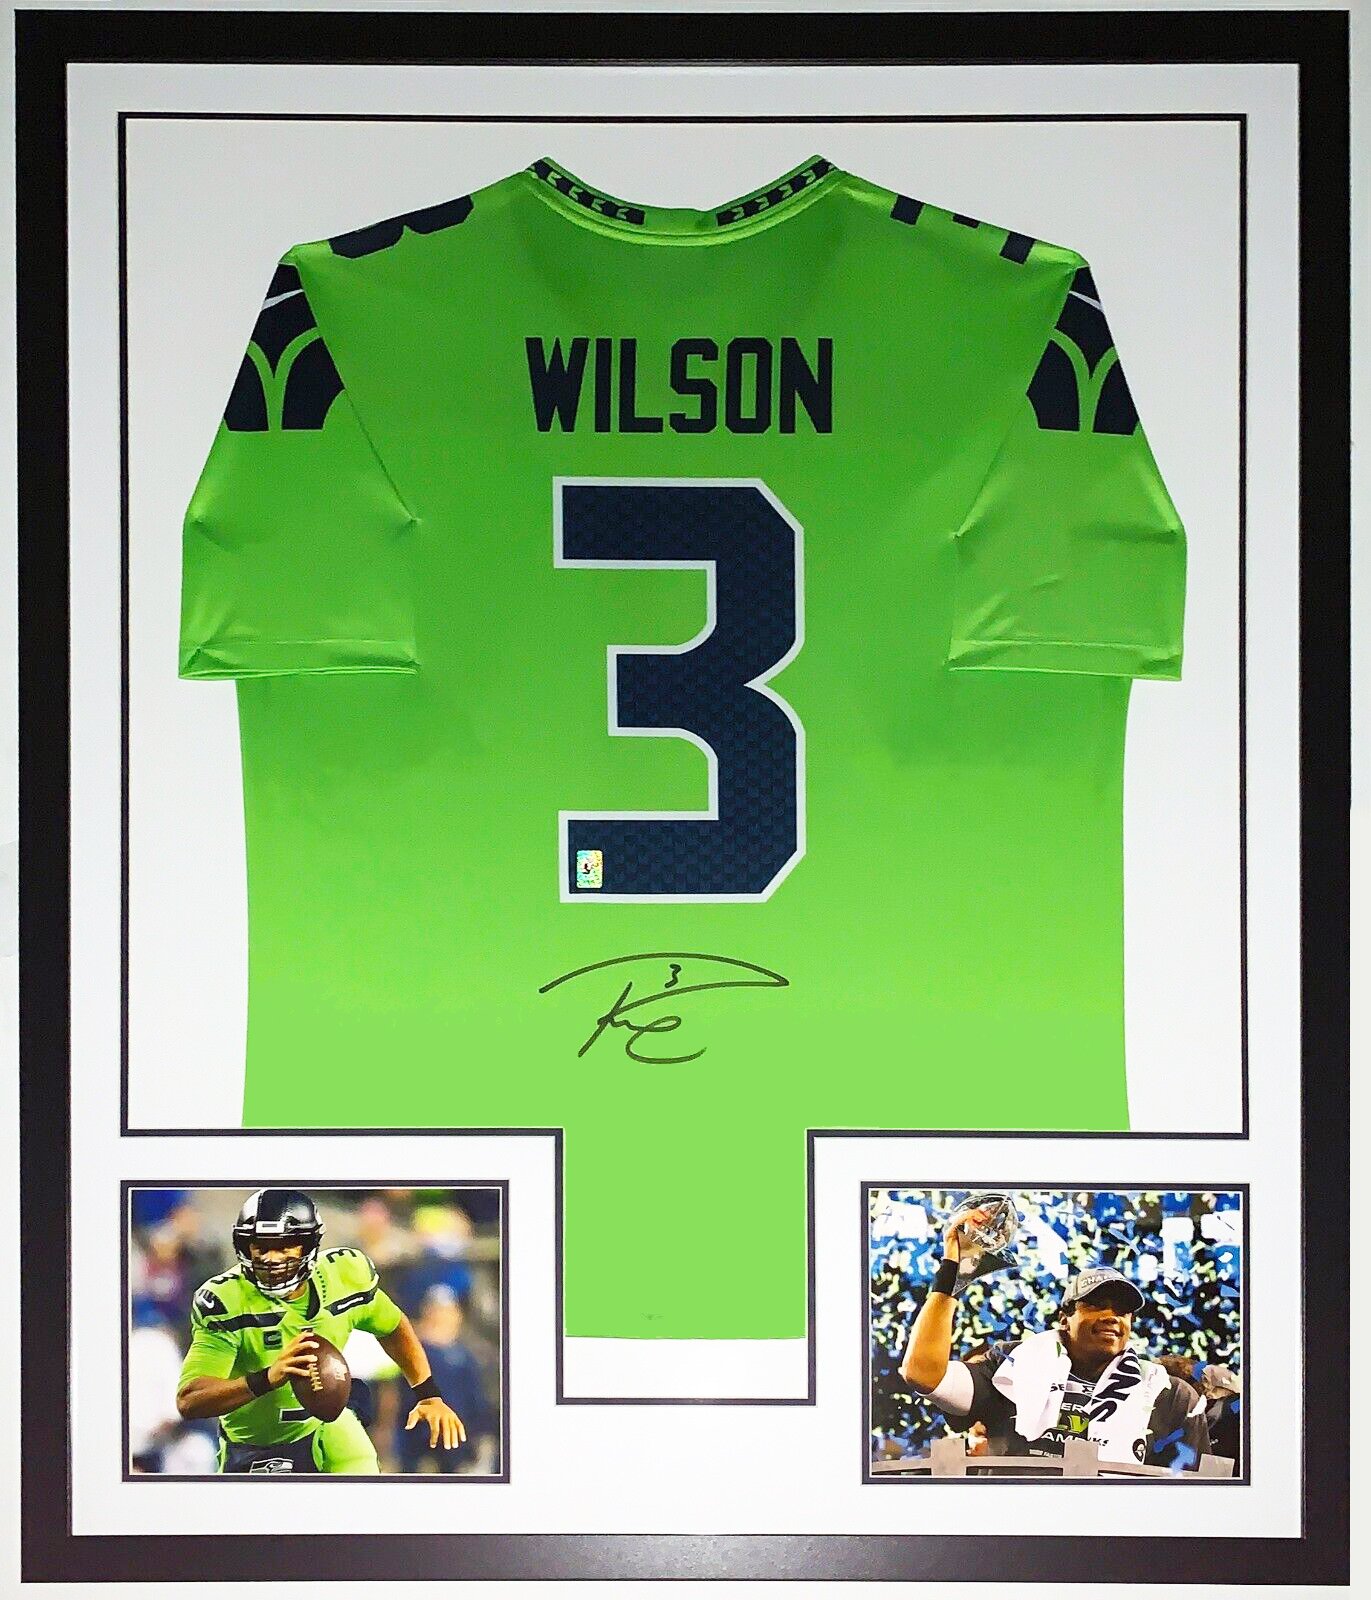 Russell Wilson Super Bowl jersey